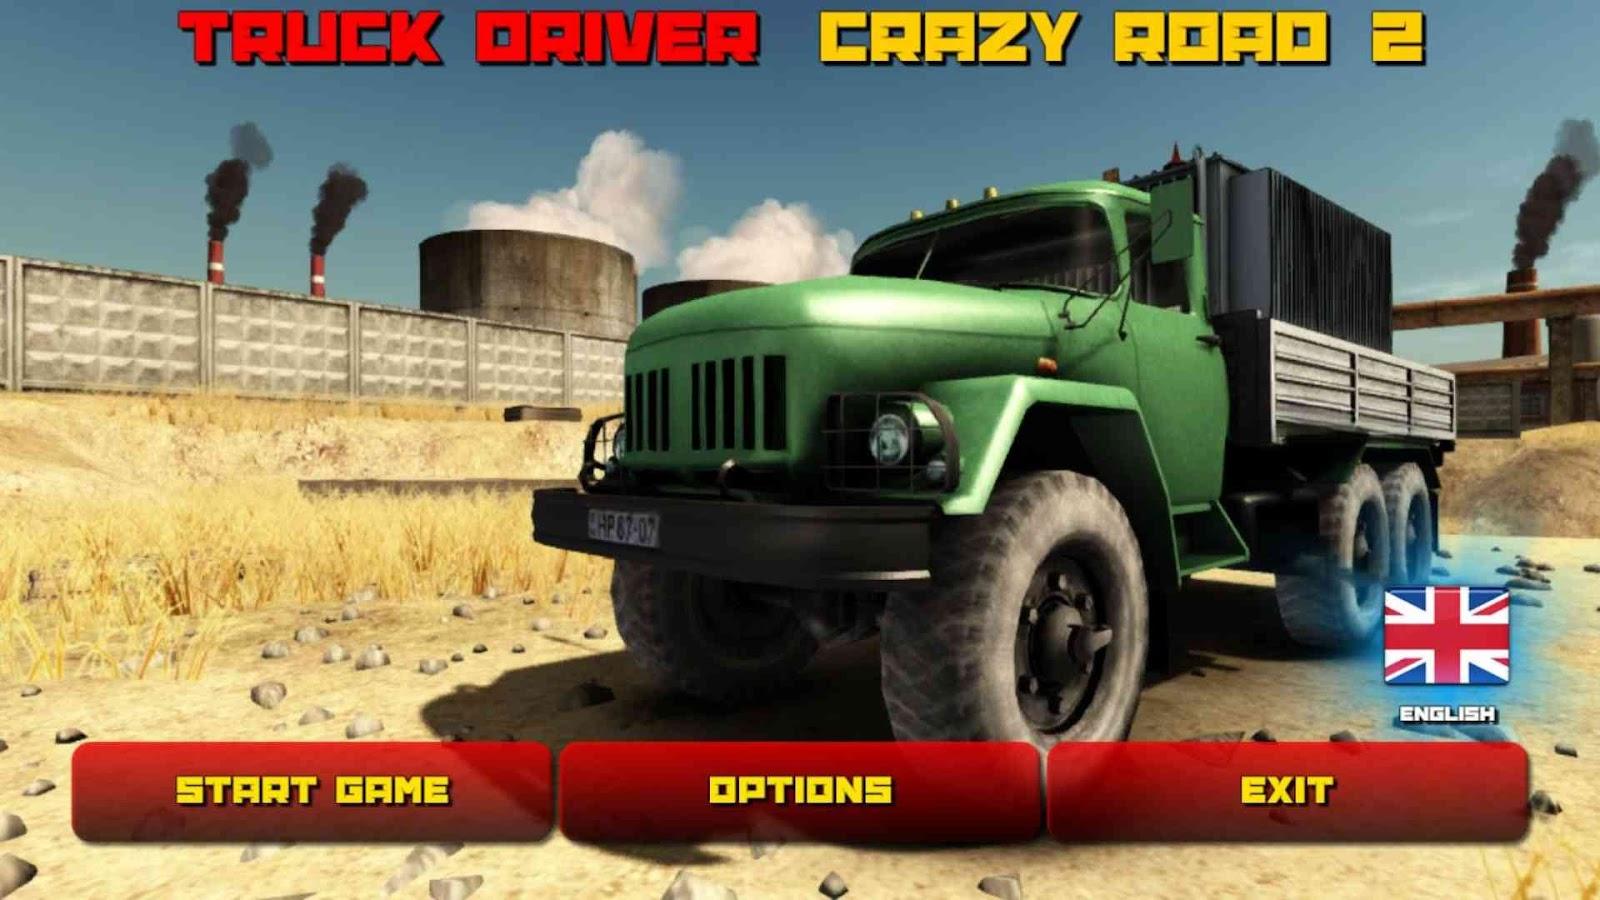 Truck Driver: Crazy Road 2